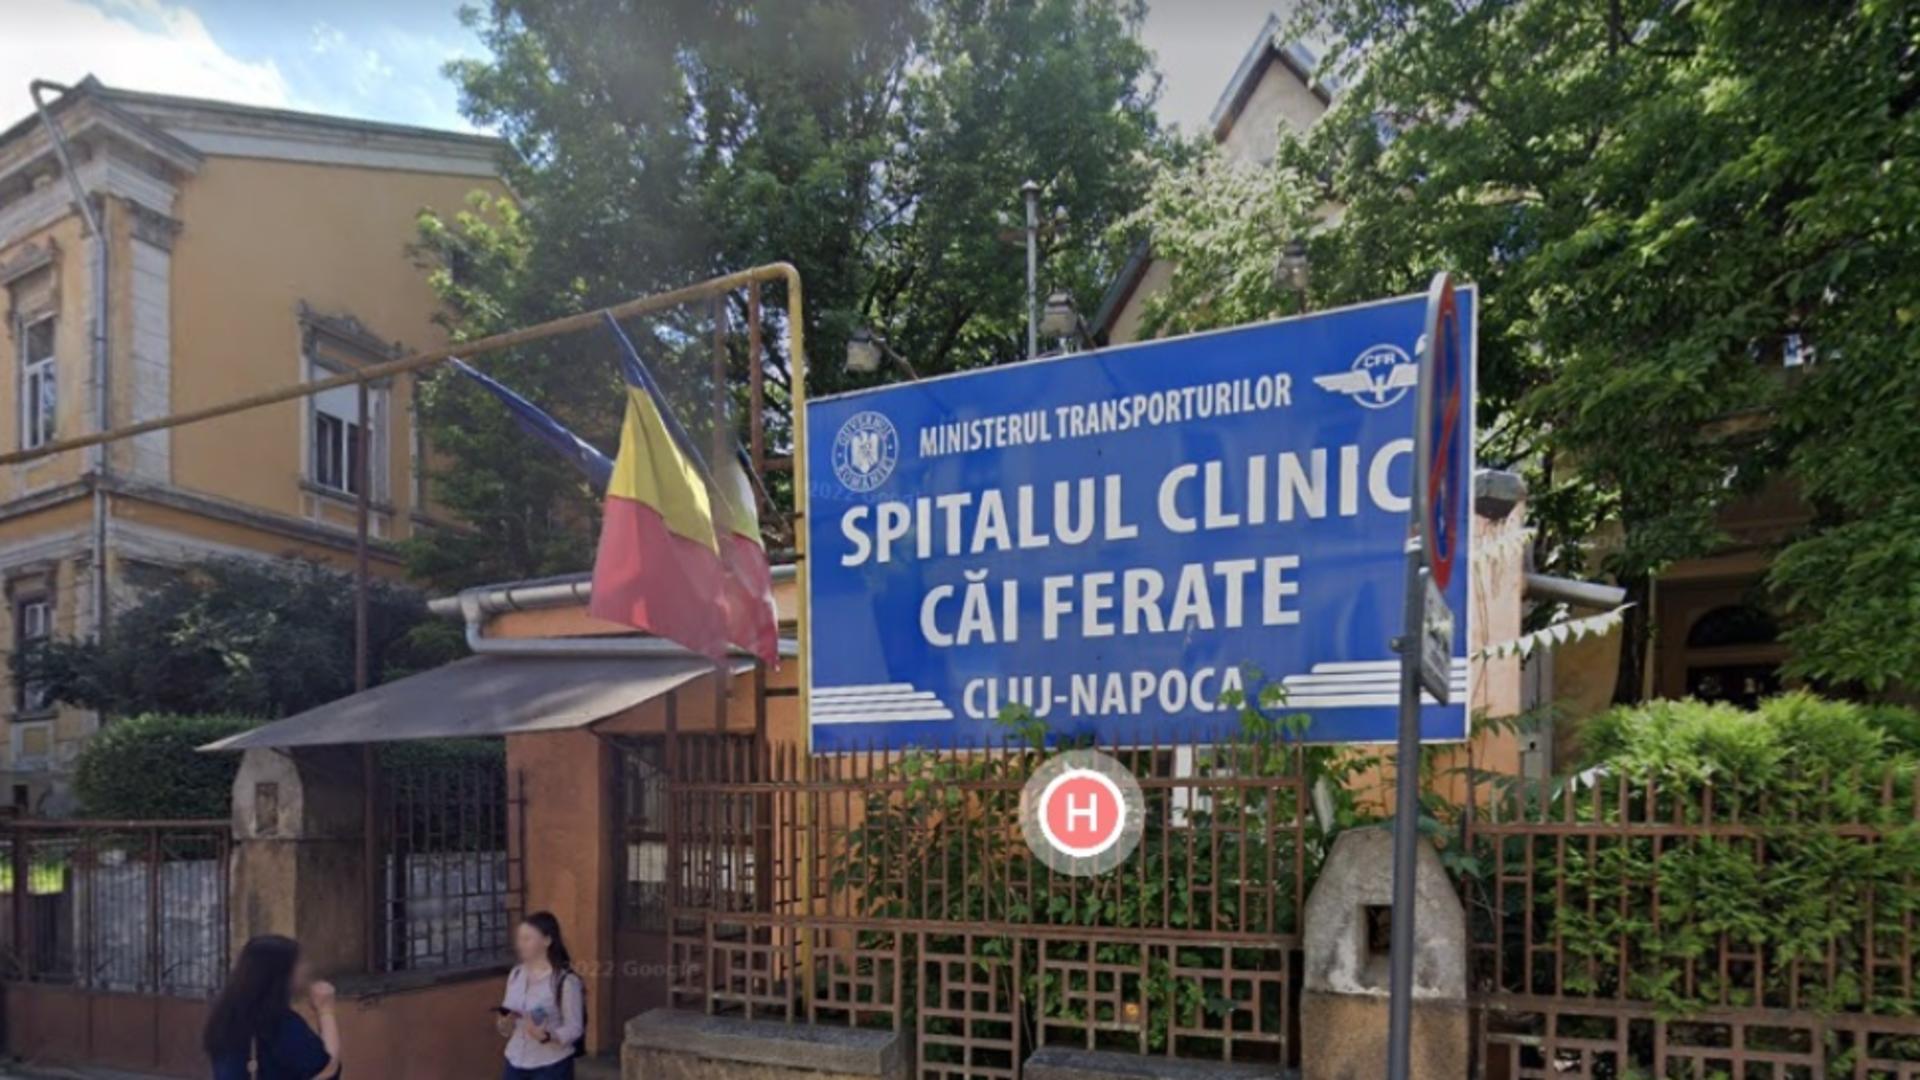 Guvernul transferă cele 15 spitale de la Ministerul Transporturilor la autoritățile locale - Măsura, criticată de sindicaliștii din Sănătate